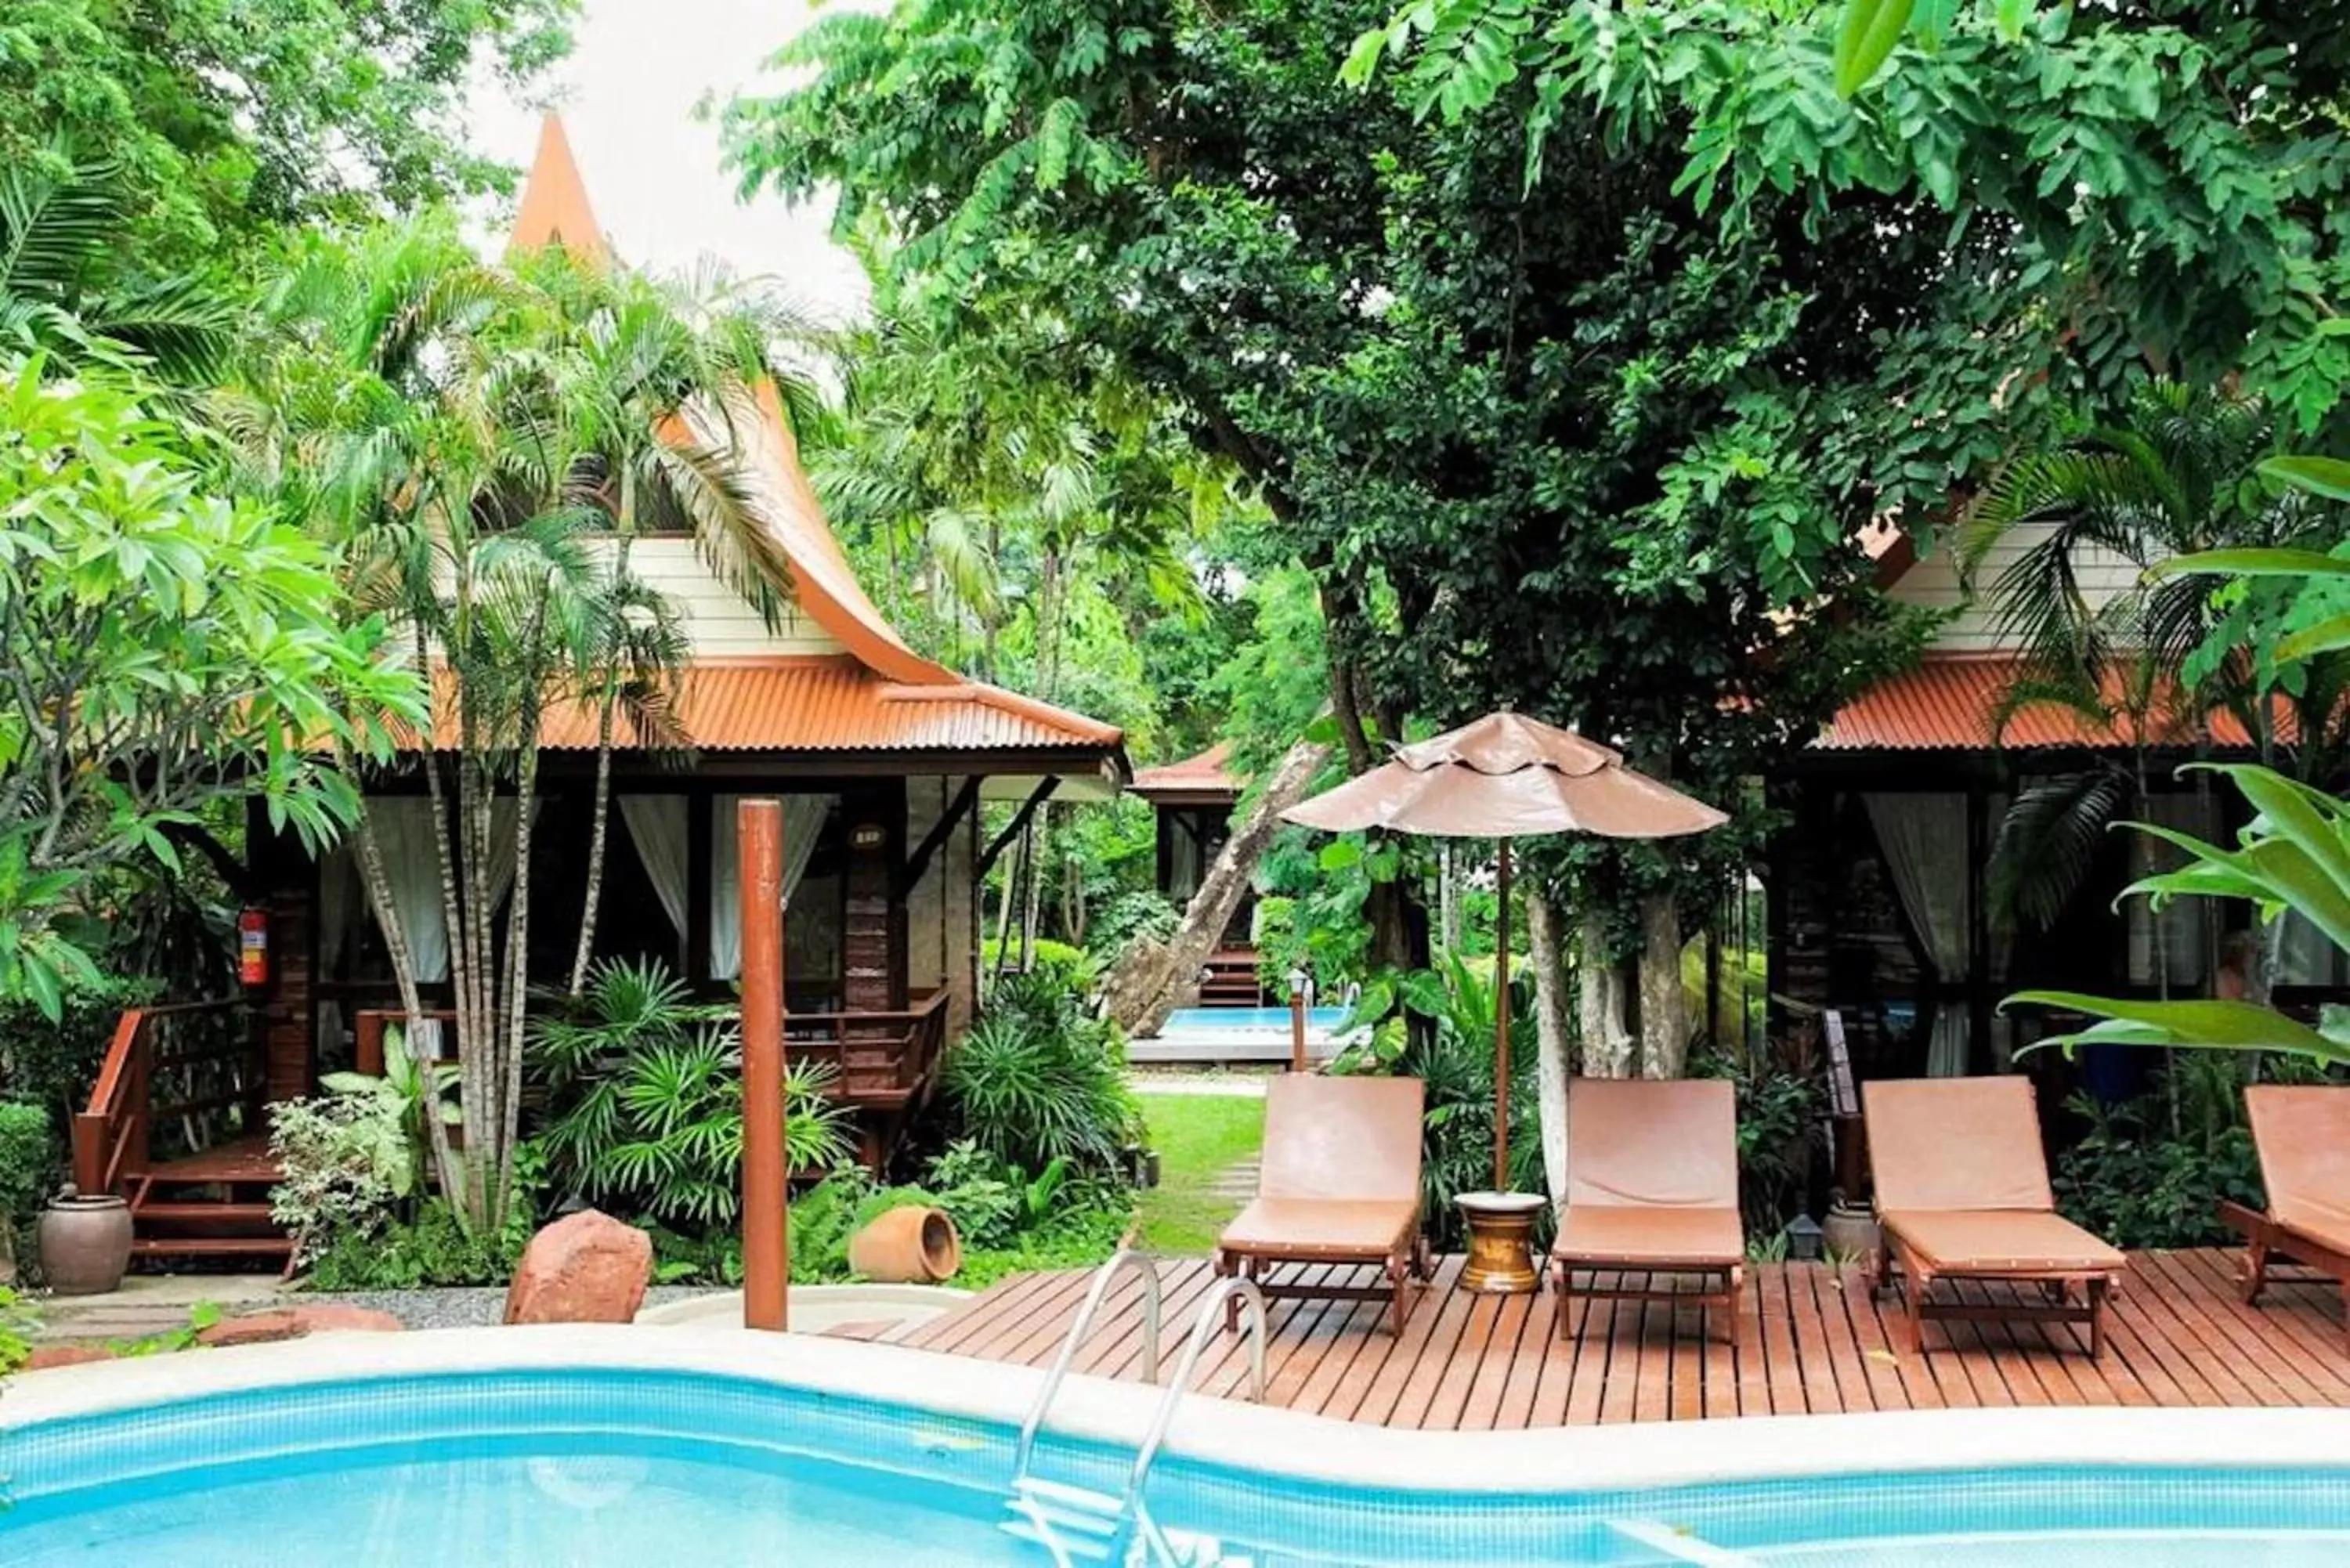 Property building, Swimming Pool in Baan Duangkaew Resort